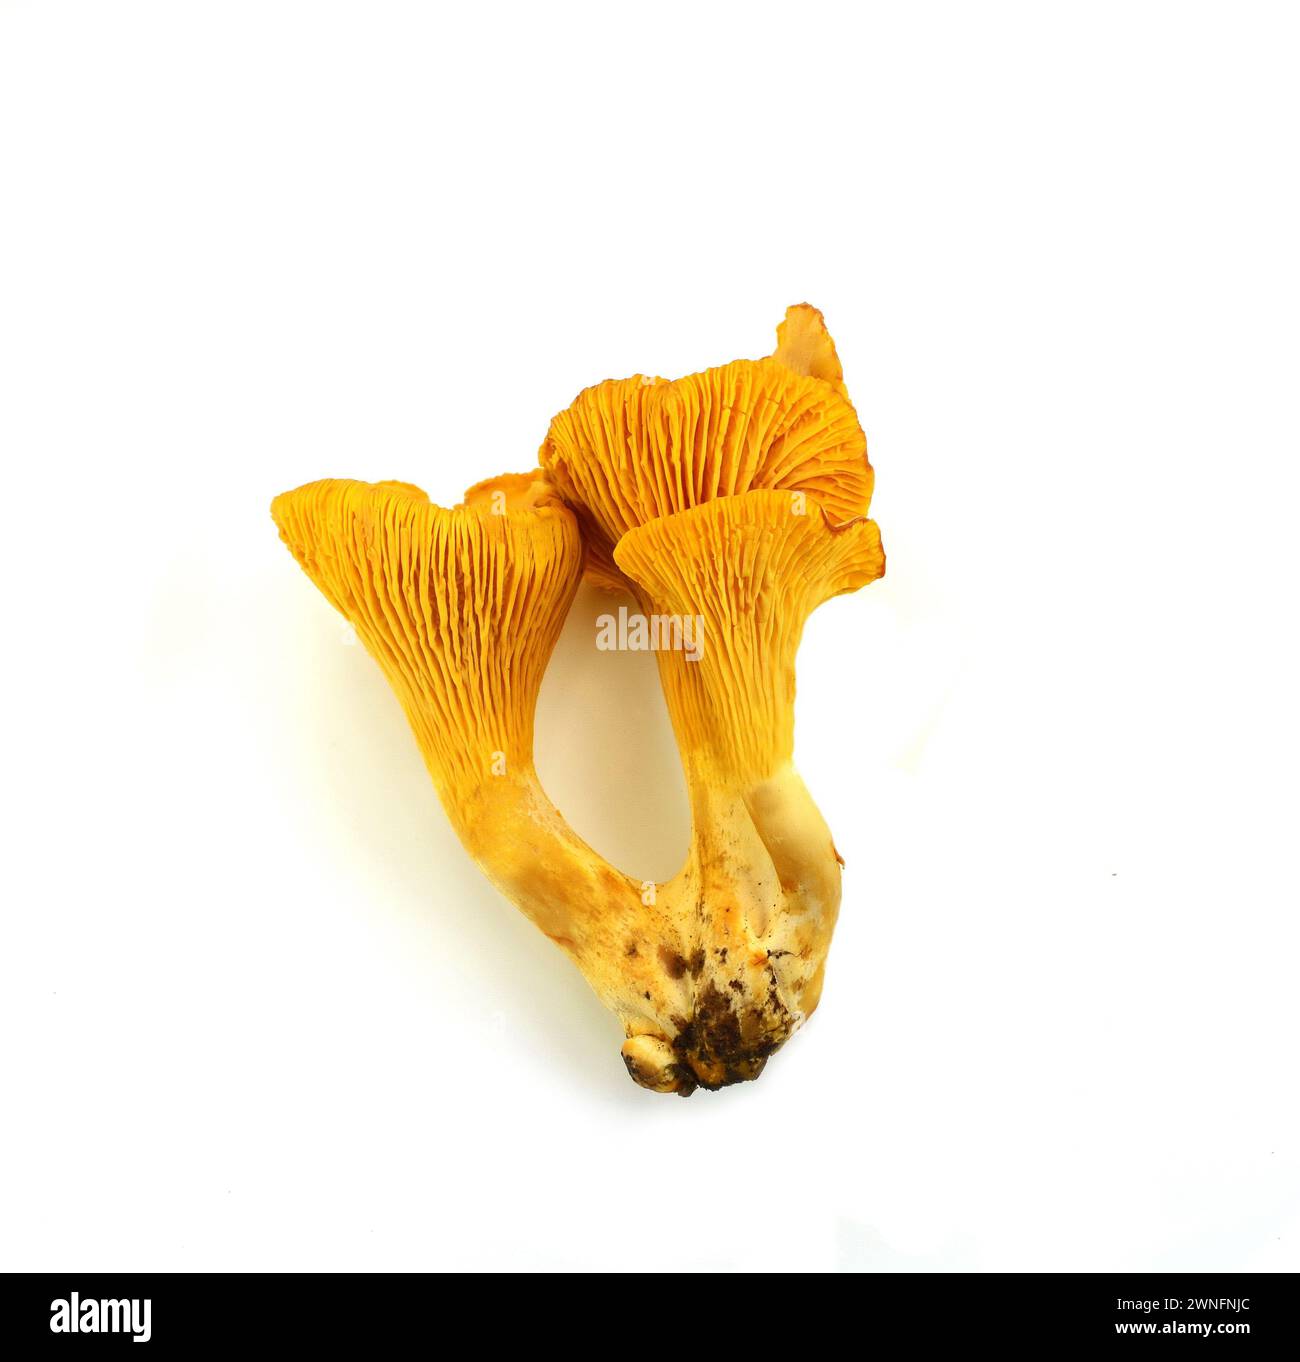 Chanterelle jaune isolée sur fond blanc. Chanterelles ou girolles (Cantharellus cibarius) Banque D'Images